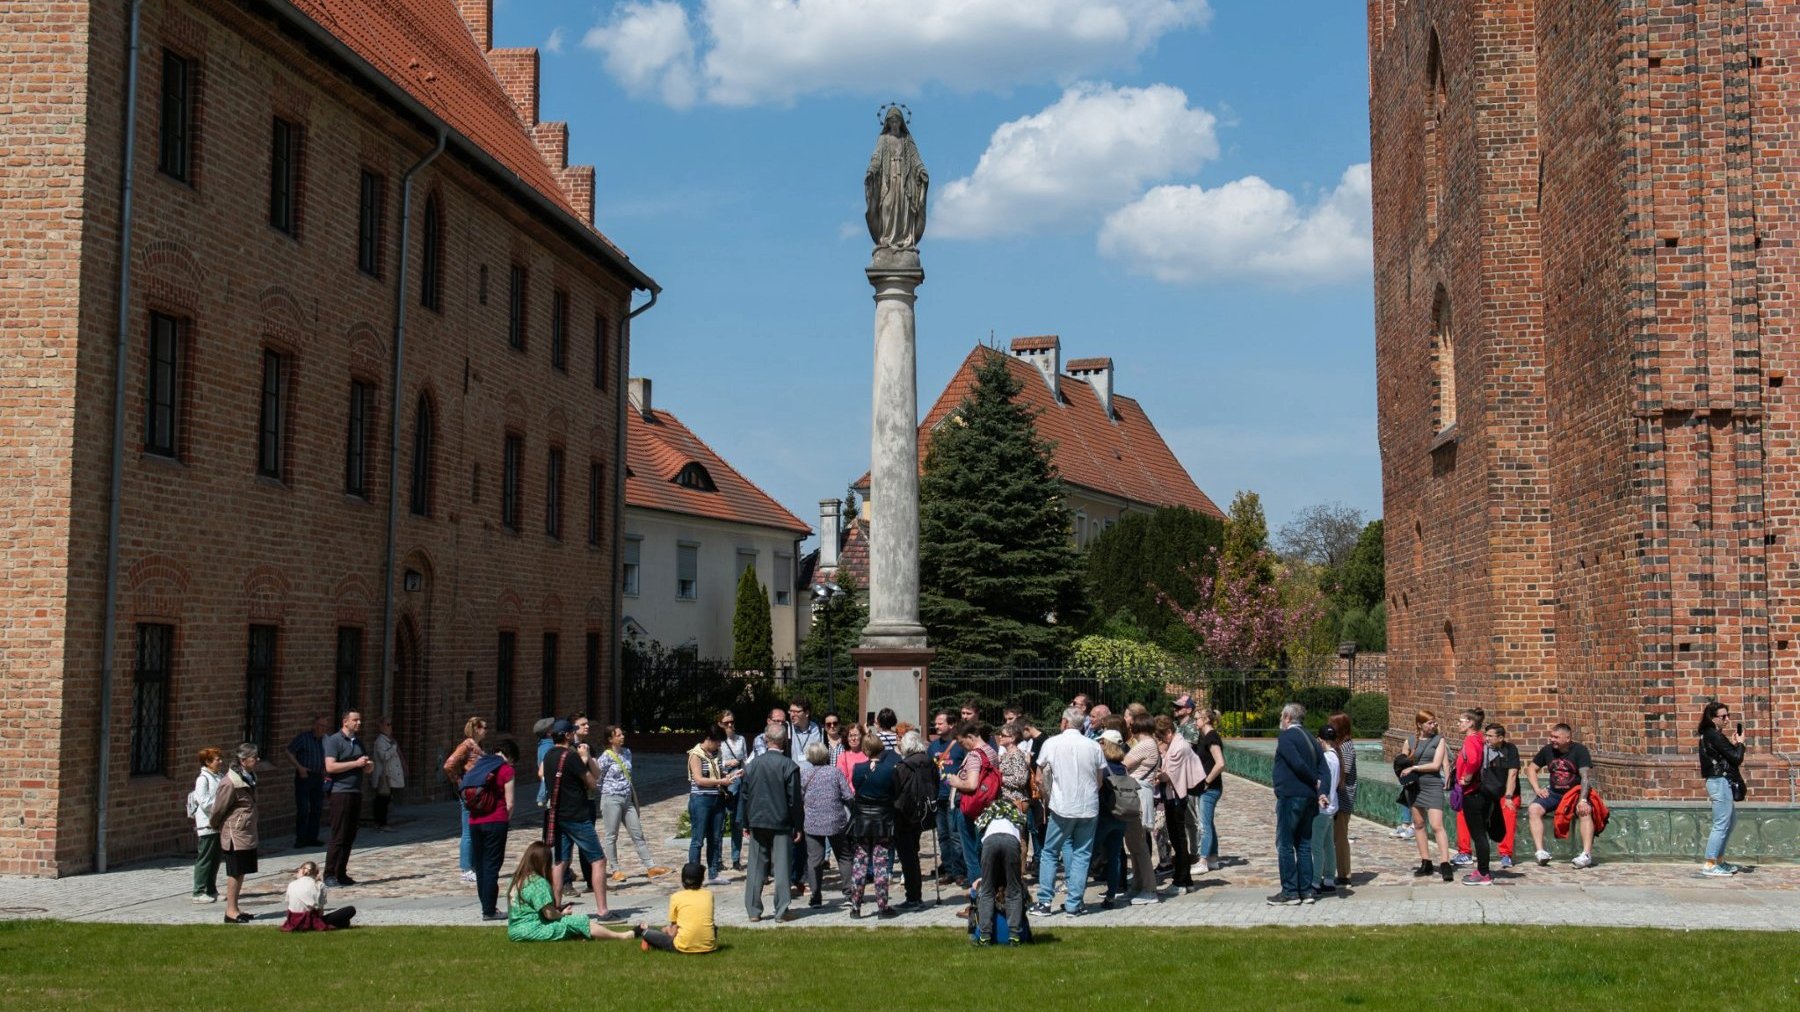 Zdjęcie przedstawia grupę ludzi podczas spaceru po Ostrowie Tumskim. W tle ceglane mury budynków oraz monument zwieńczony figurą.